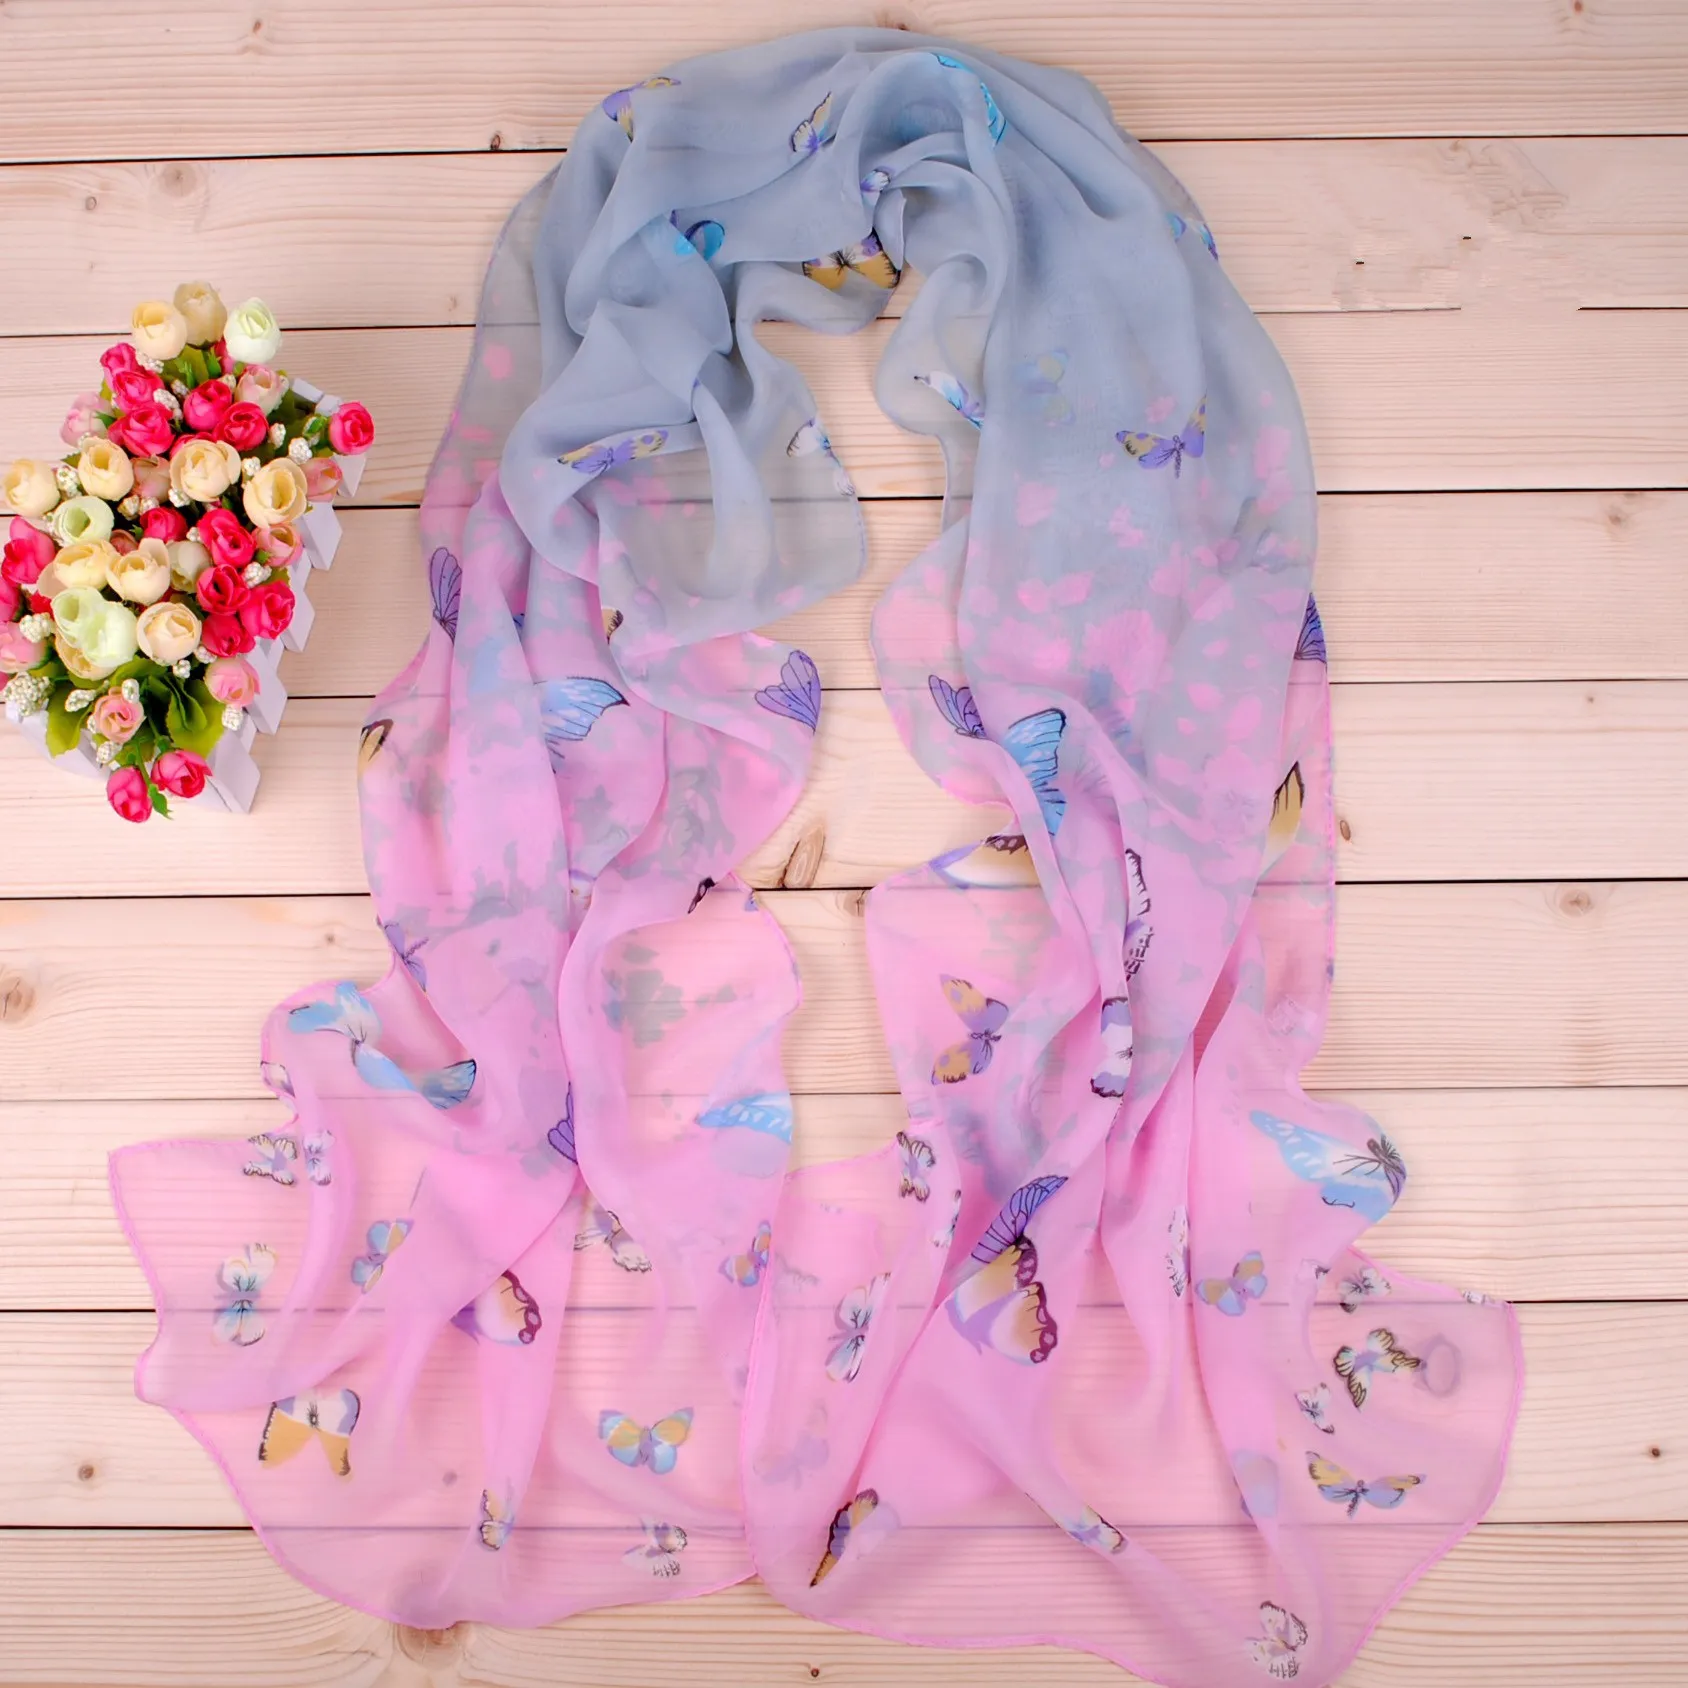 Colorful farfalla sciarpe in chiffon fiore nuovo disegno sciarpa di seta fiore stampa vendita calda pashmina scialle warp fascia all'ingrosso sciarpa GL-SX017